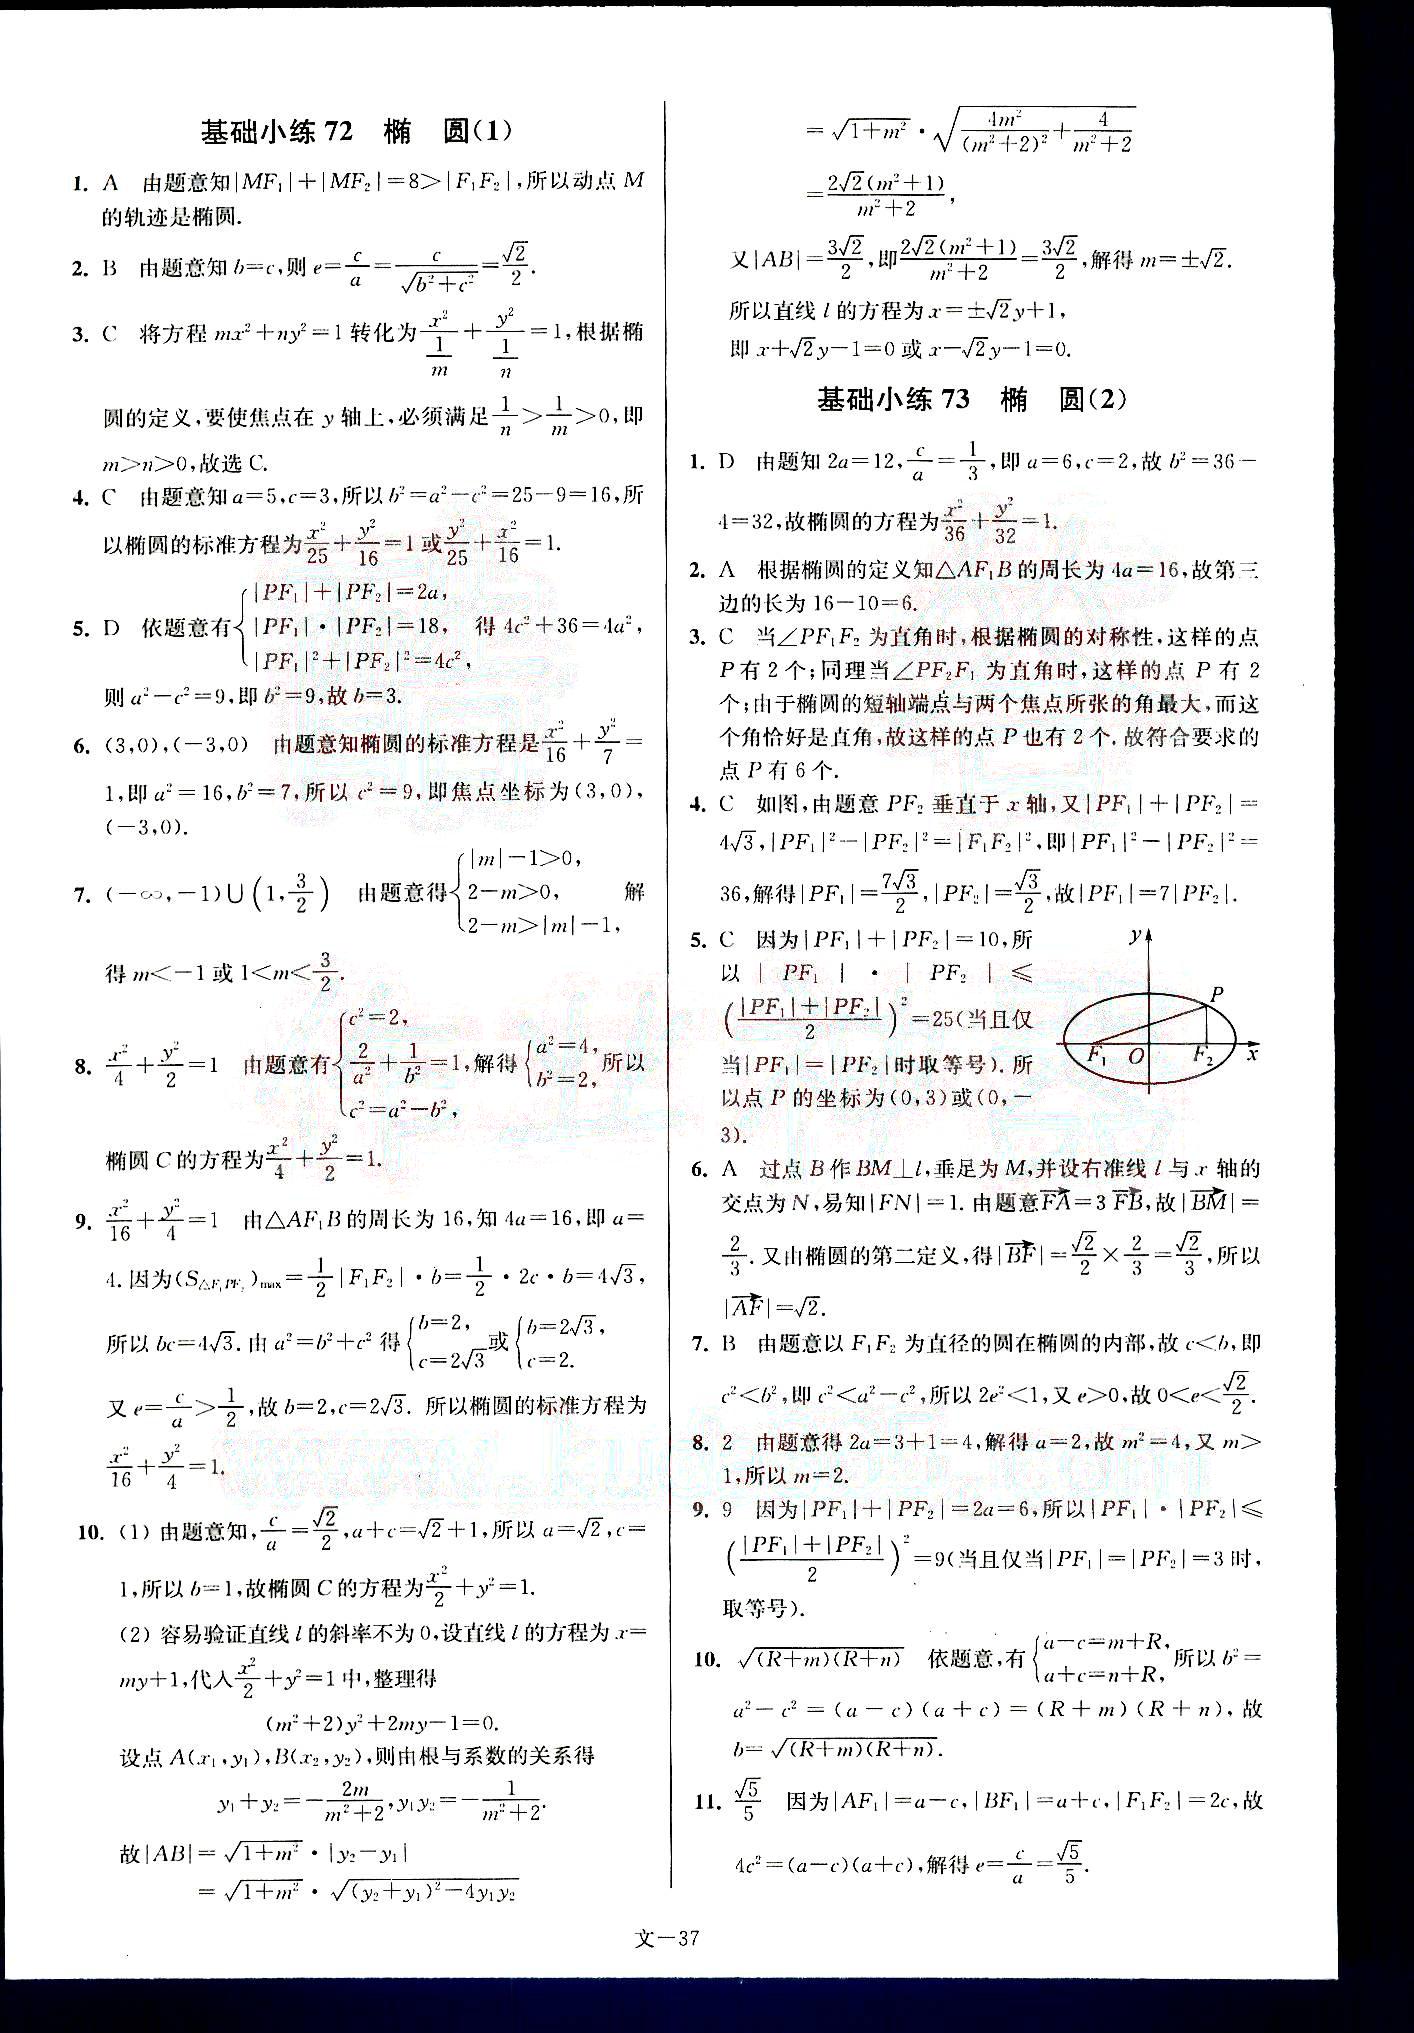 小题狂做-高考数学-文科-最基础篇南京大学出版社 第8部分 [2]